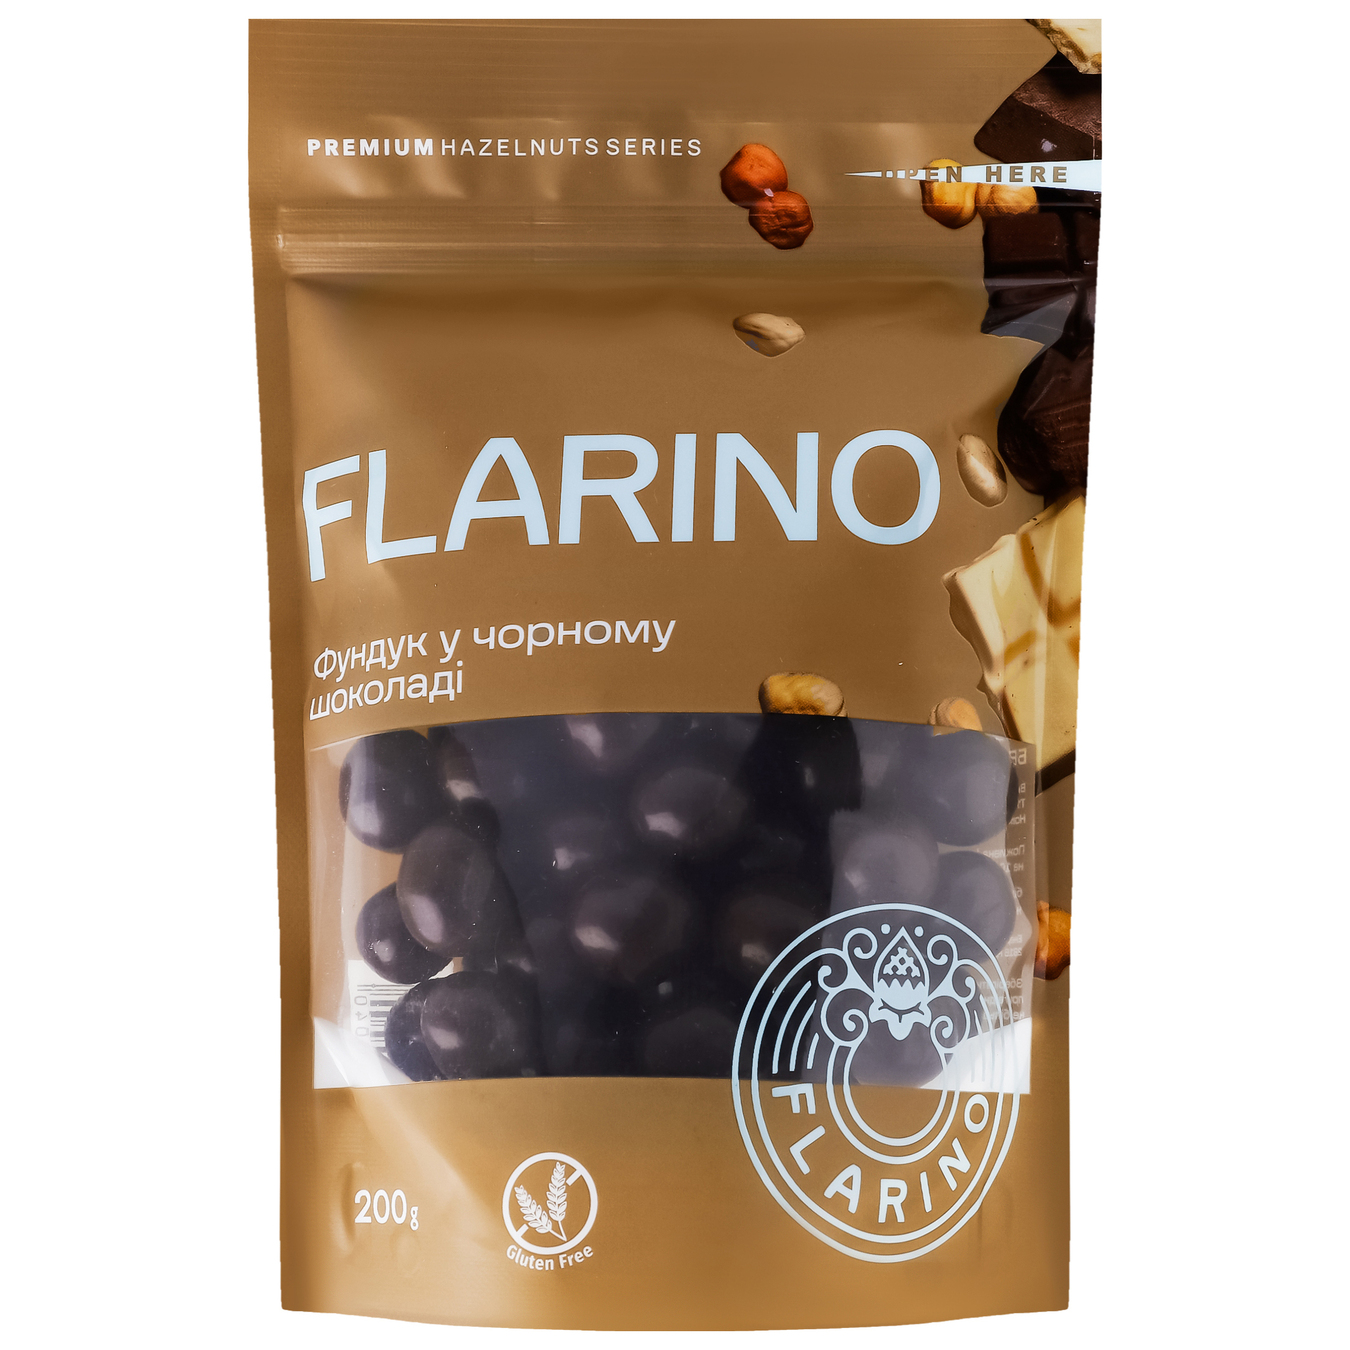 Flarino hazelnuts in dark chocolate 200g